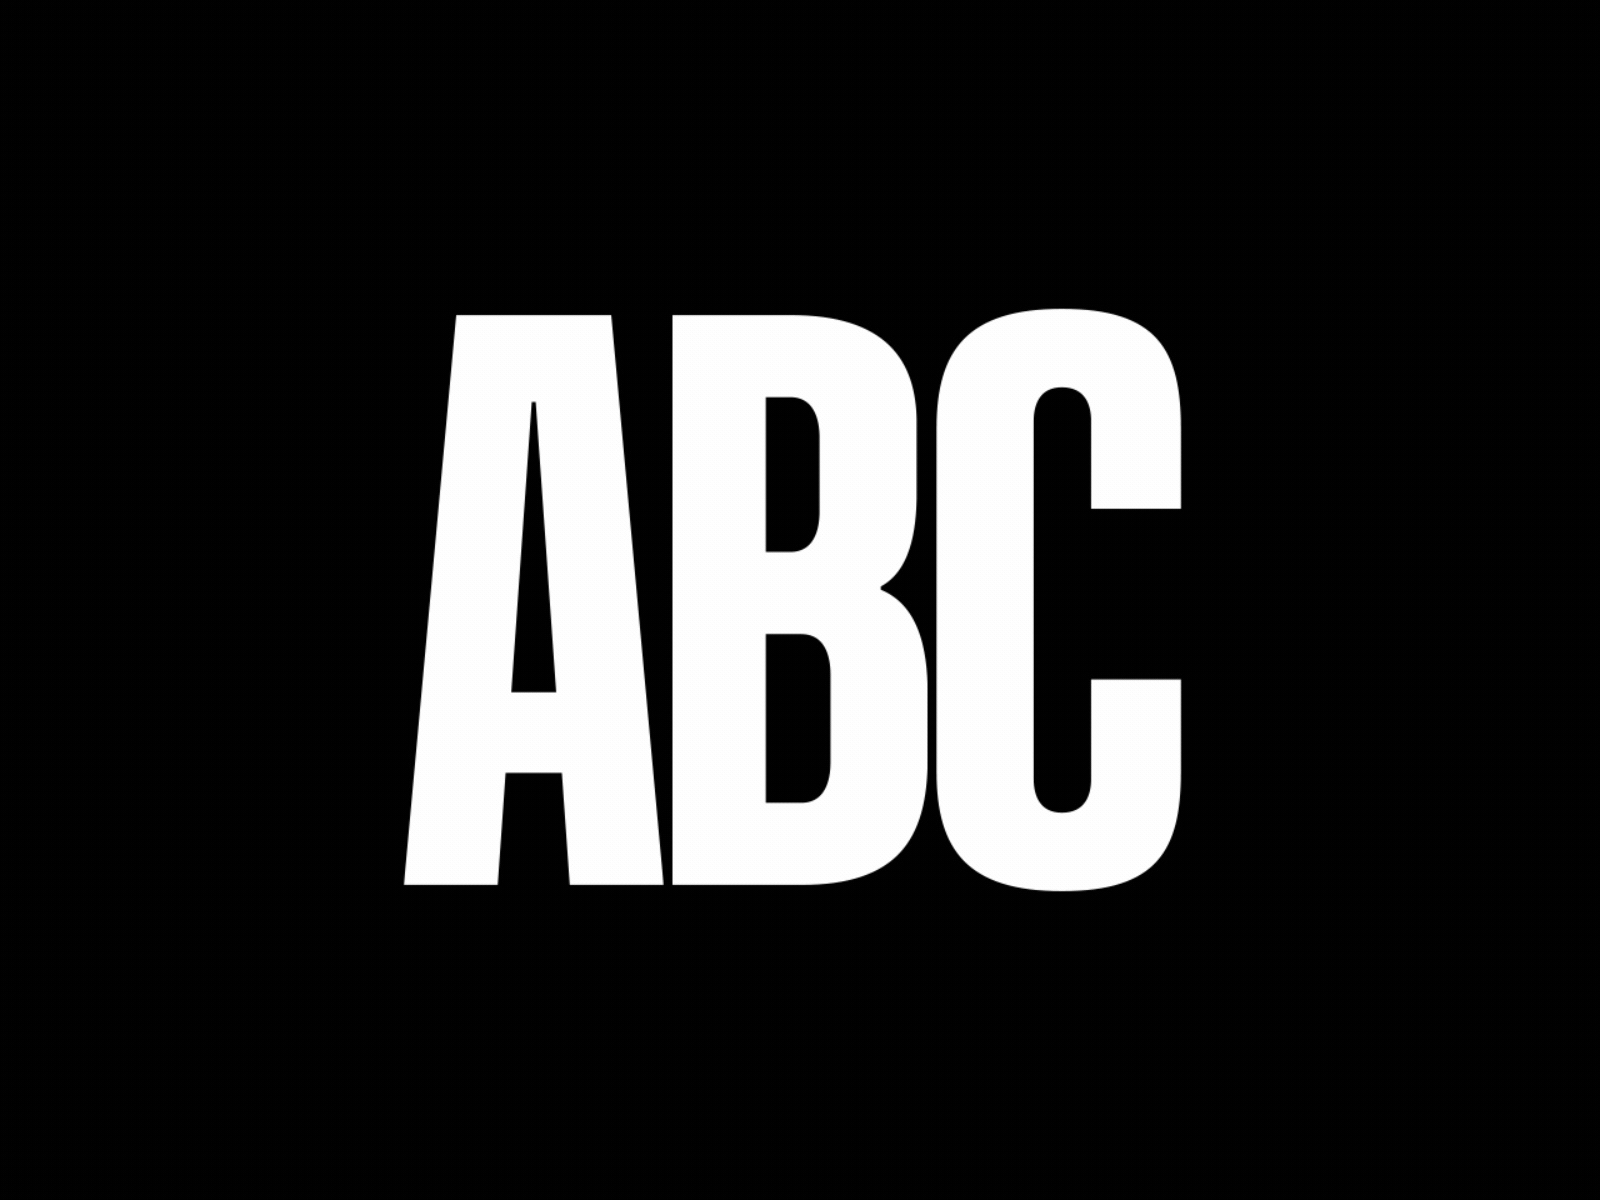 Compression ABC